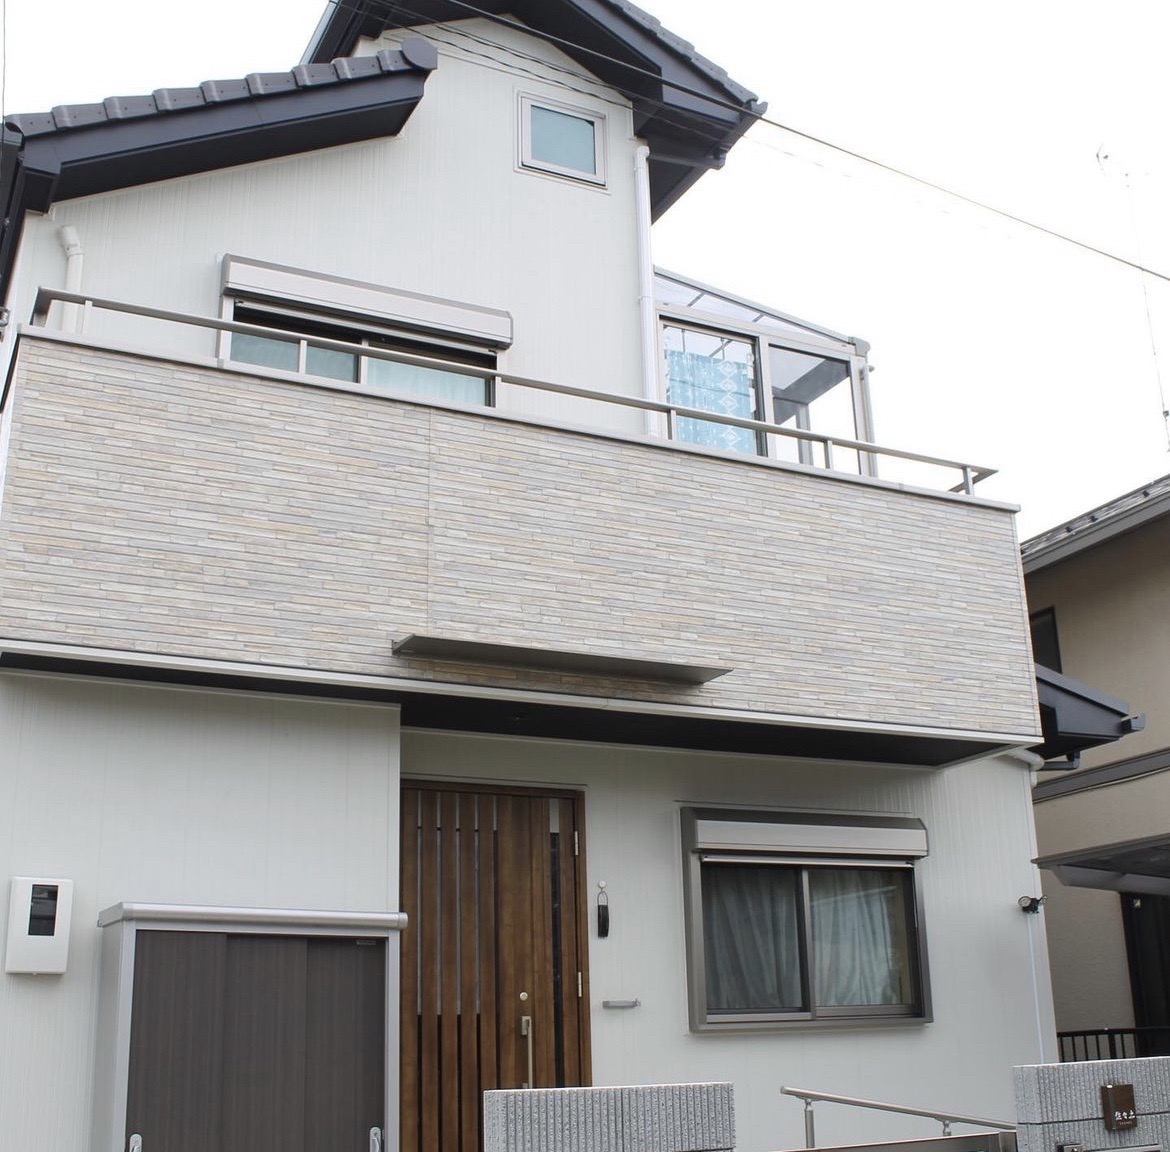 「埼玉×新築」さぁ、とっておきの空間で好きに暮らそう。|瓦屋根の落ち着いた雰囲気